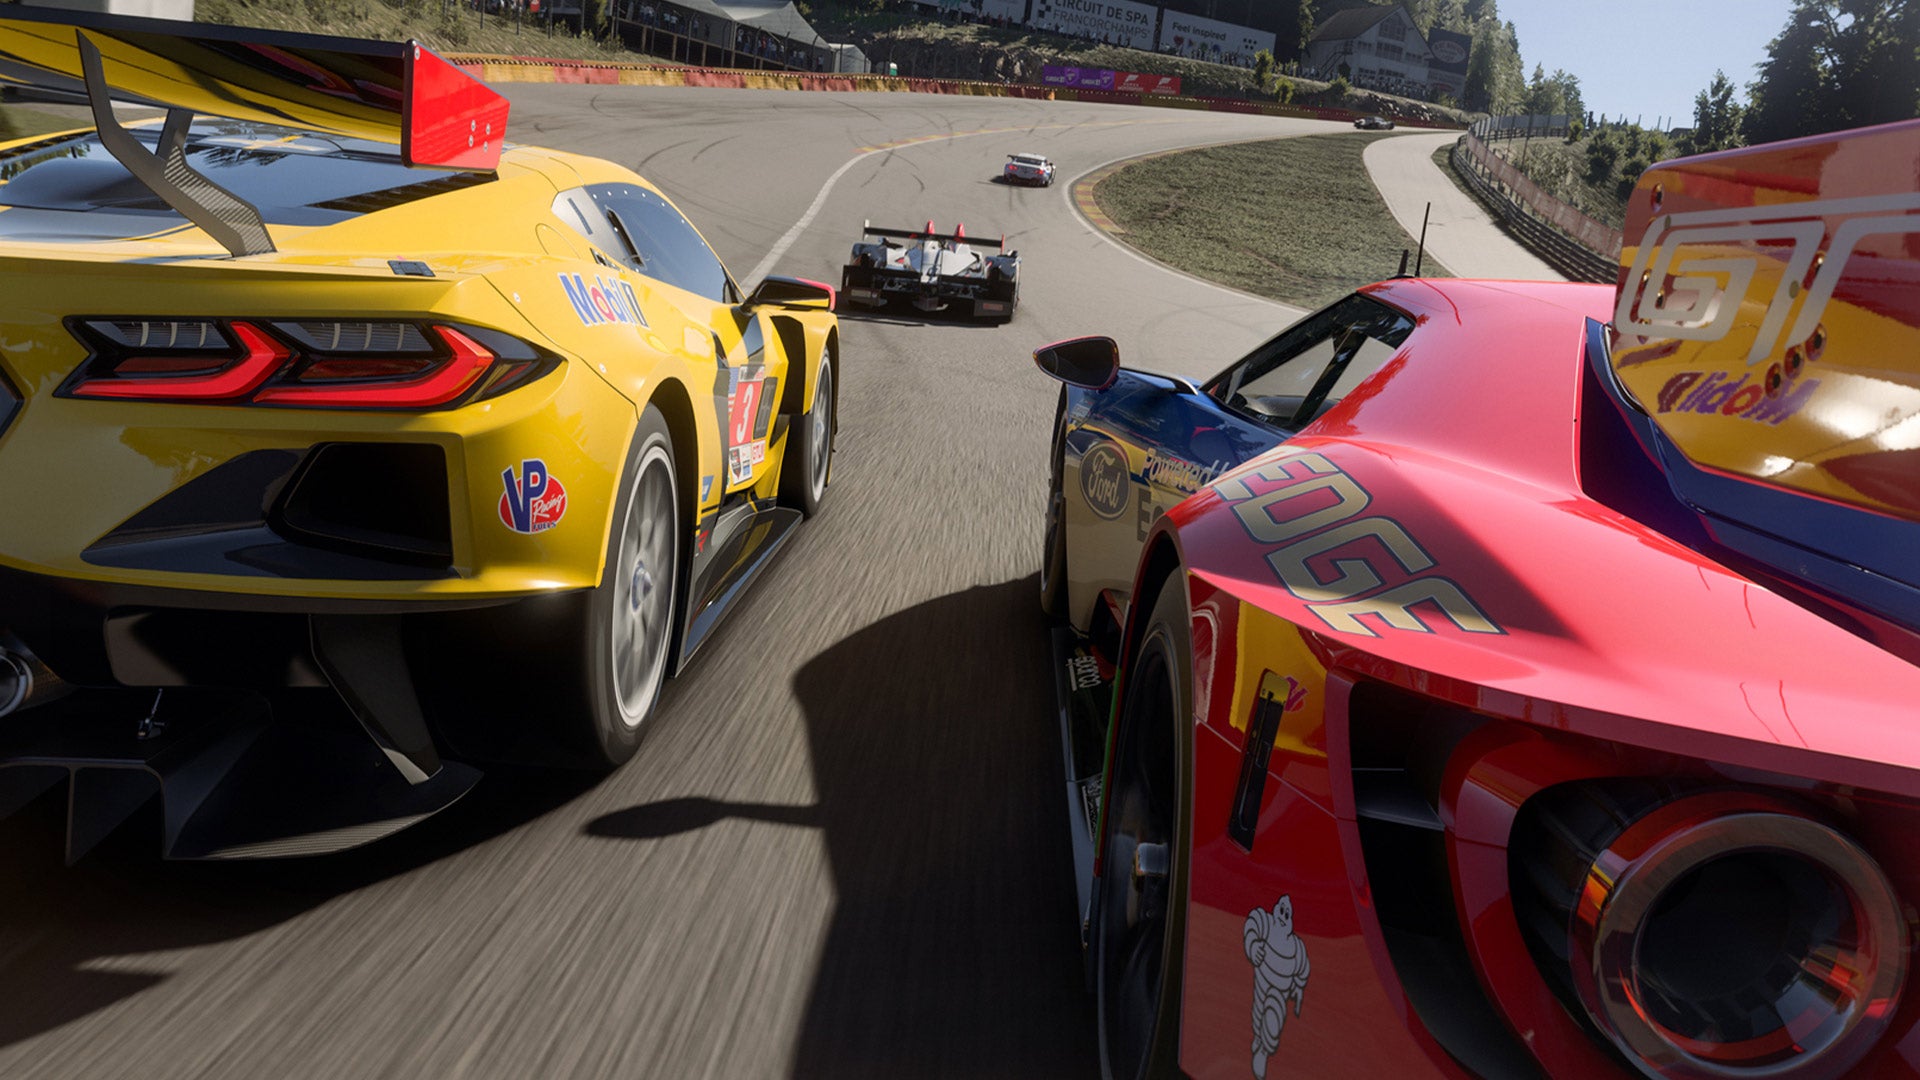 Den neste oppdateringen for Forza Motorsport, som kommer denne uken, vil justere "Safety Rating"